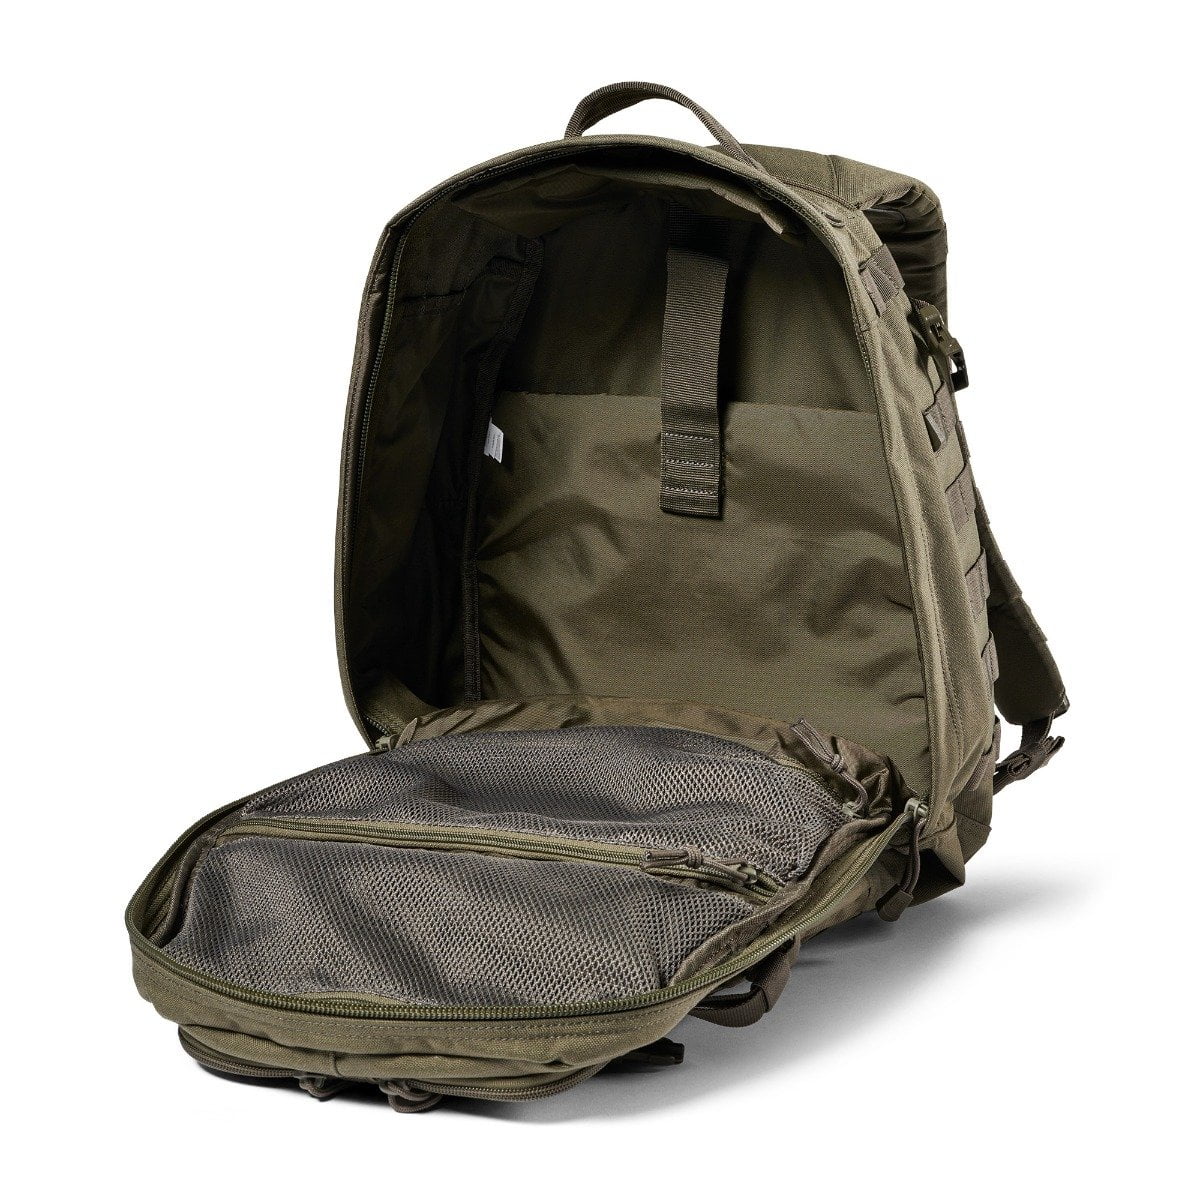 オールノット 5.11 Tactical Backpack - Rush 24 2.0 - Military Molle 